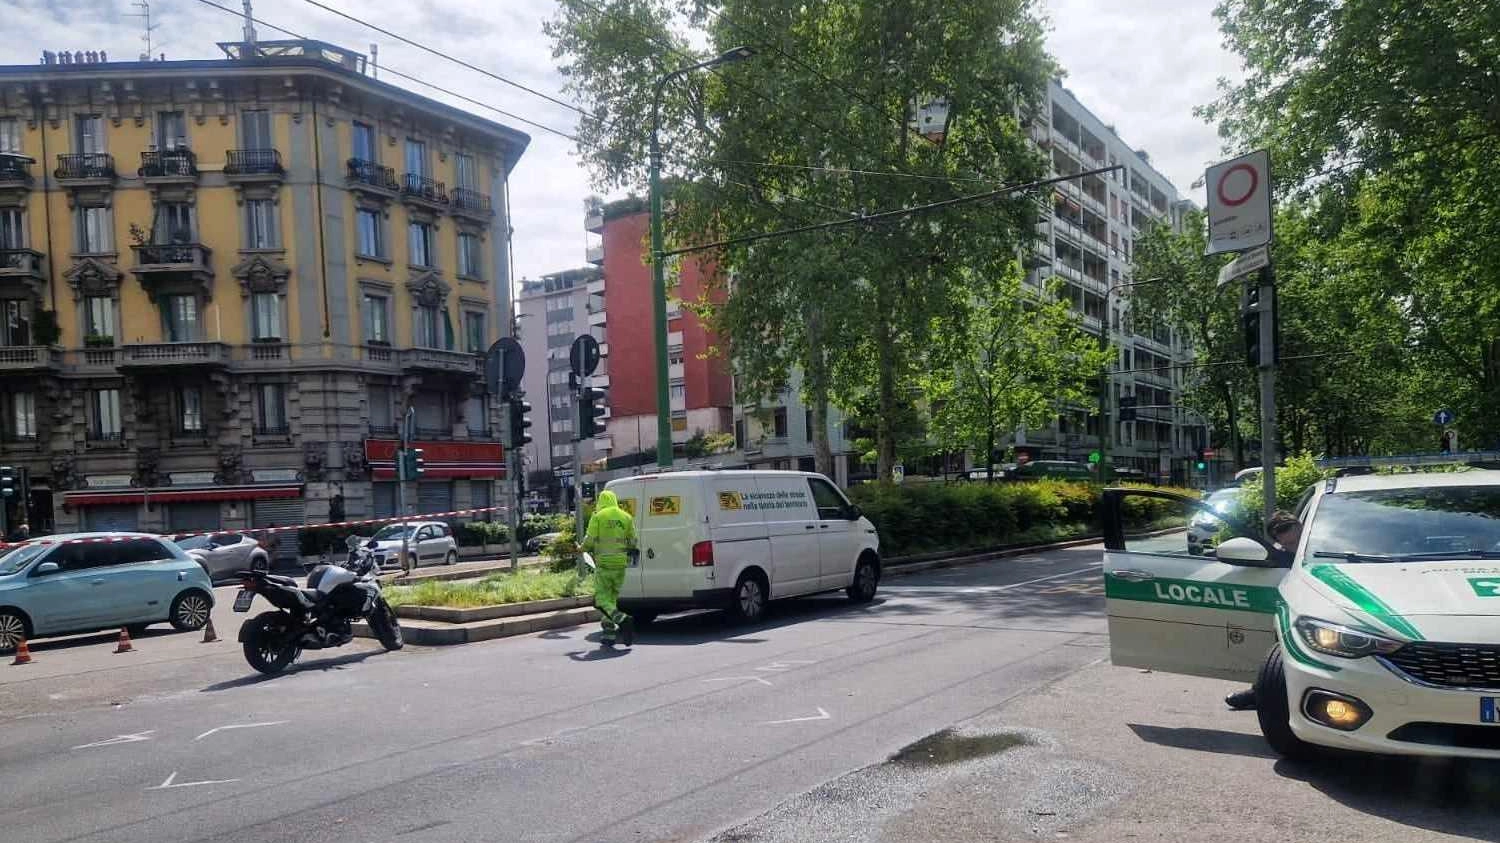 Ennesimo incidente in viale Abruzzi a Milano, noto come "il punto maledetto". Uno scontro auto-moto ha causato feriti. I residenti chiedono interventi per migliorare la sicurezza stradale.